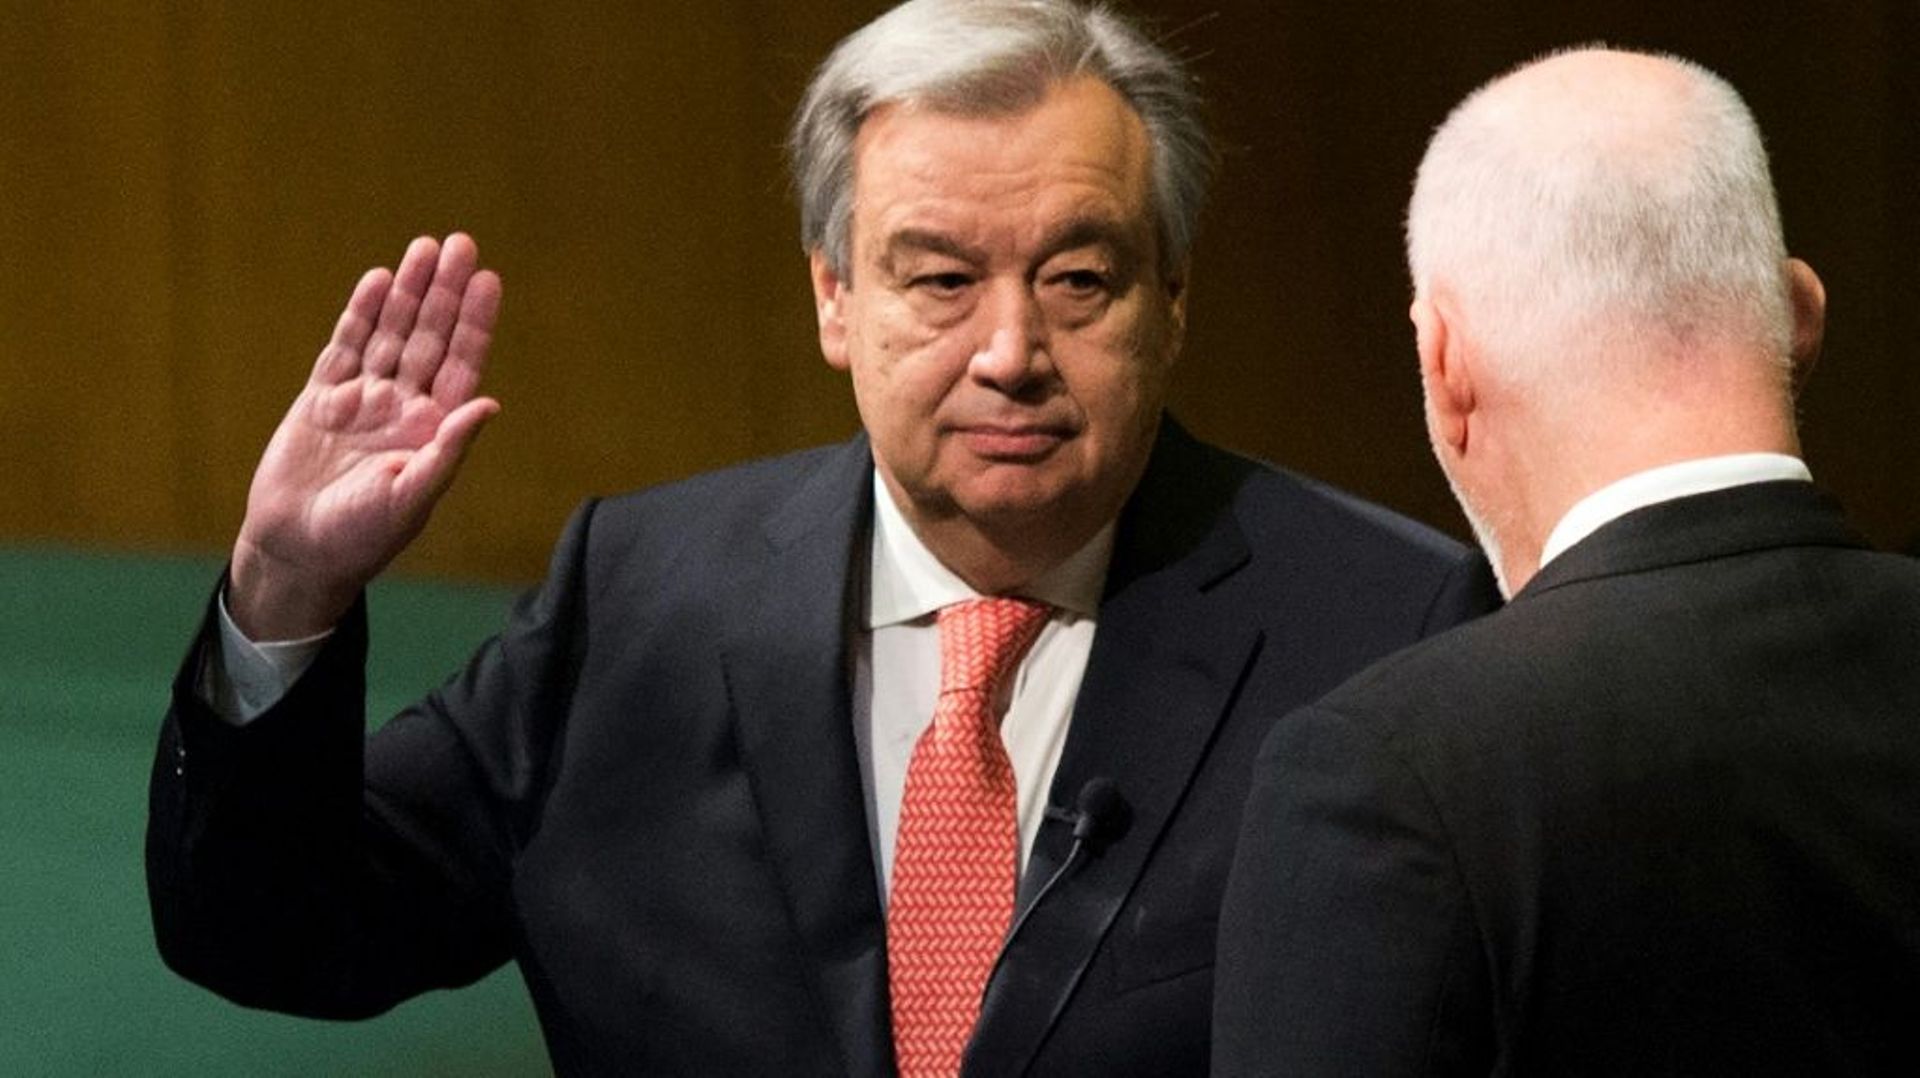 Antonio Guterres prête serment au titre de nouveau secrétaire général des Nations unies devant le président de l'Assemblée générale Peter Thomson, le 12 décembre 2016 à New York